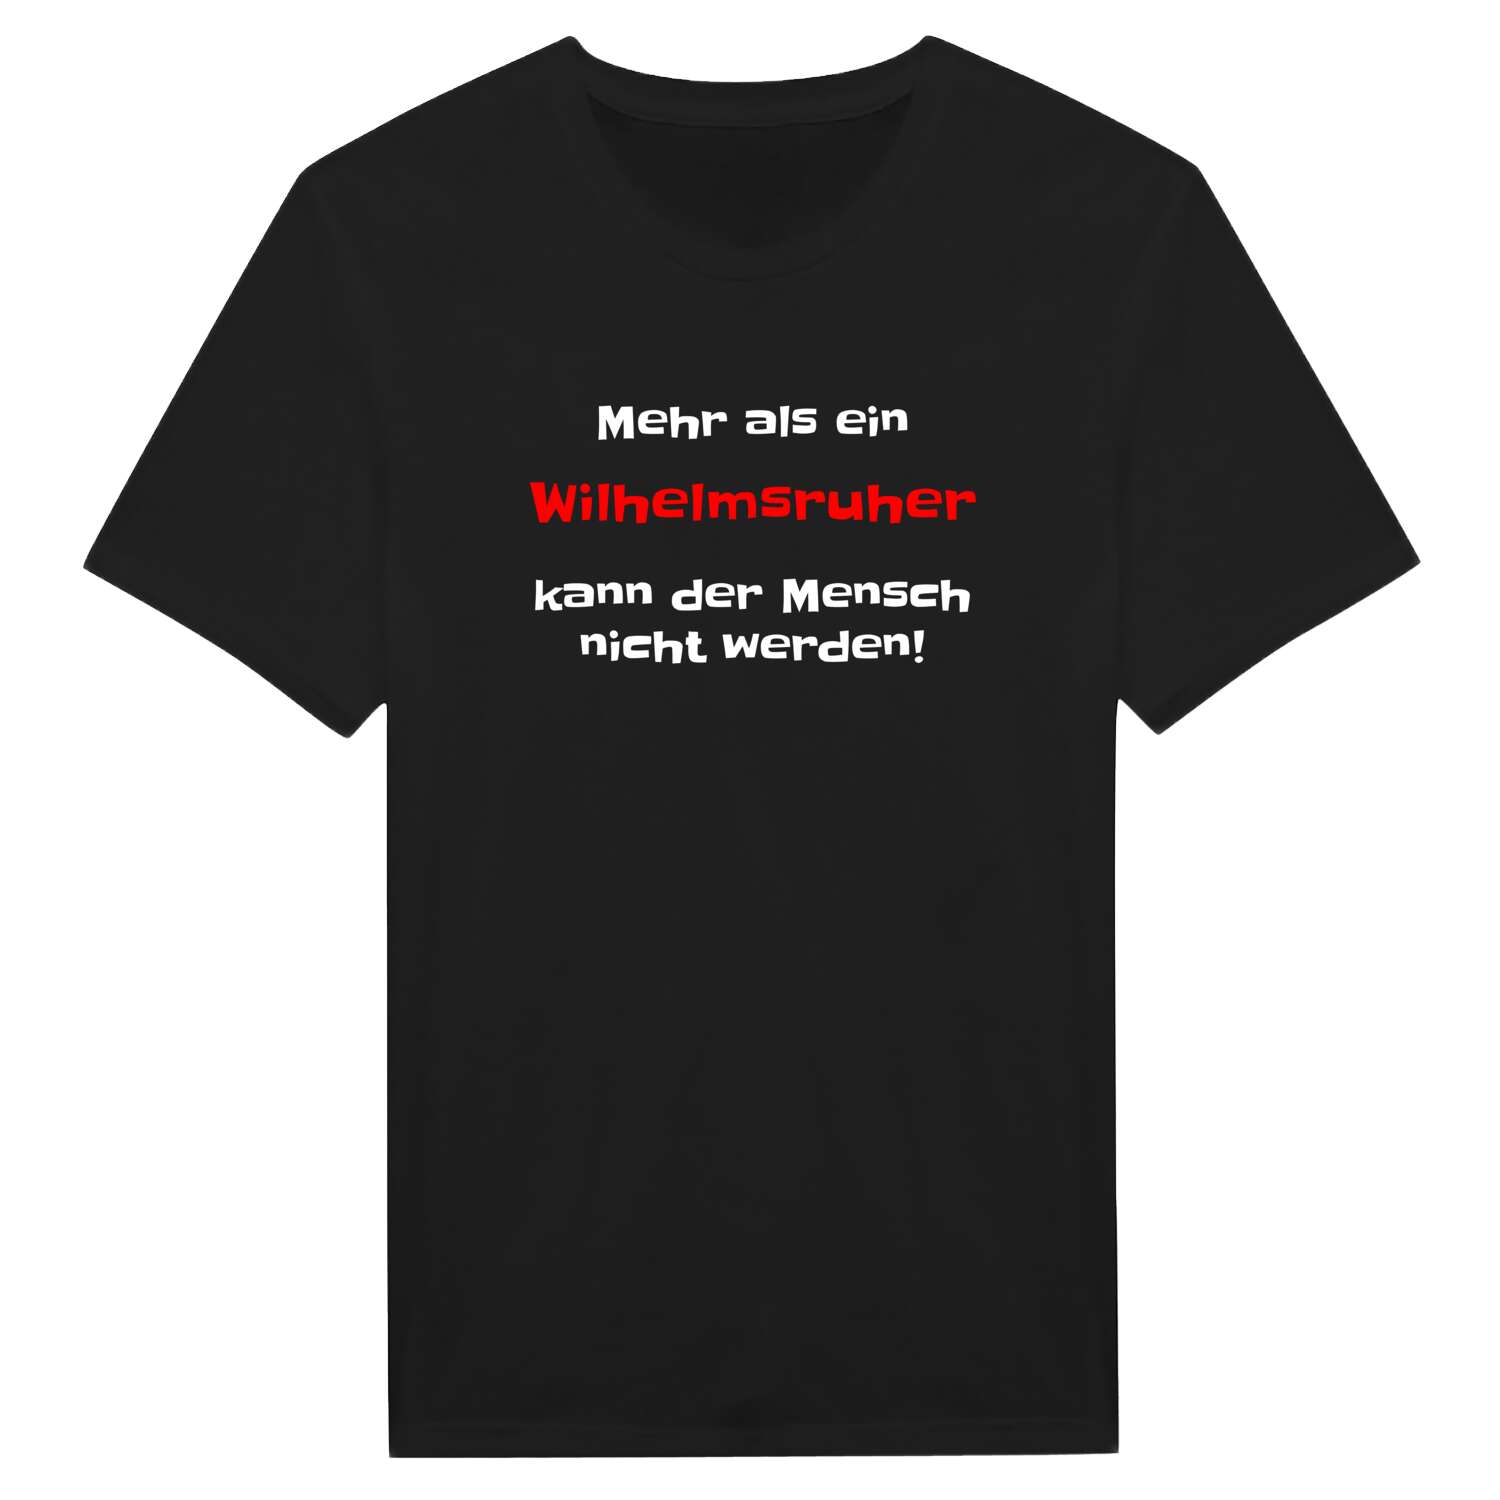 Wilhelmsruh T-Shirt »Mehr als ein«